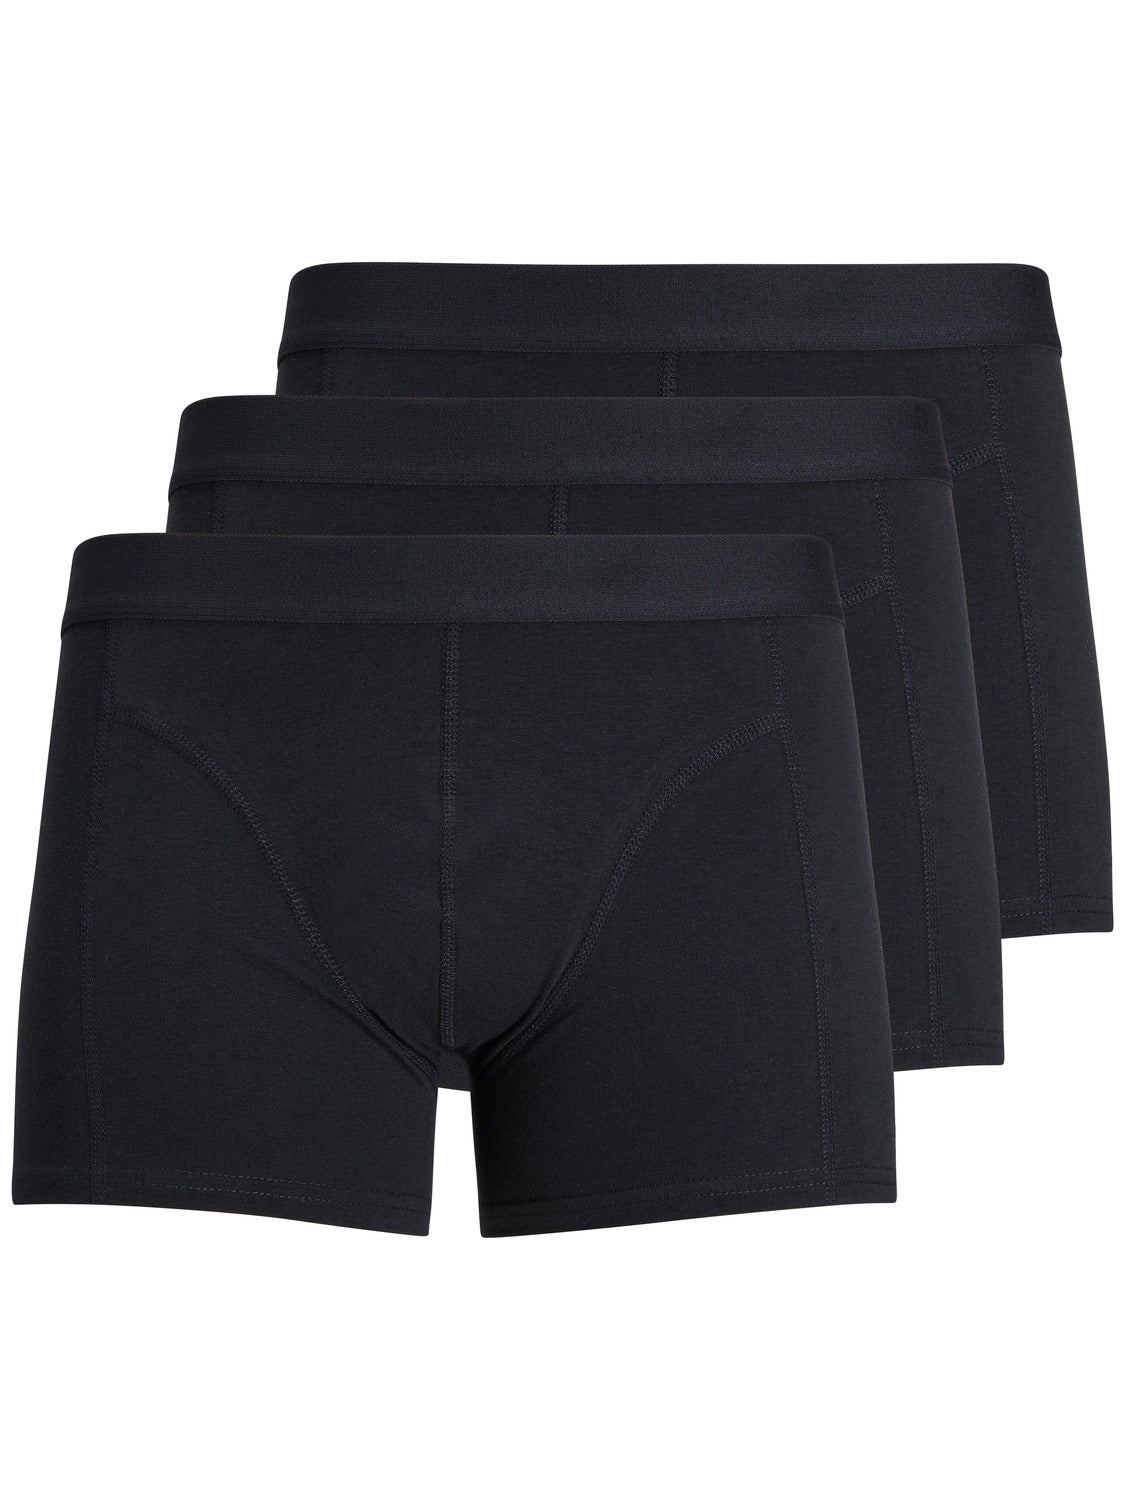 MEN FASHION Underwear & Nightwear discount 54% Jack & Jones Underpant Gray S 